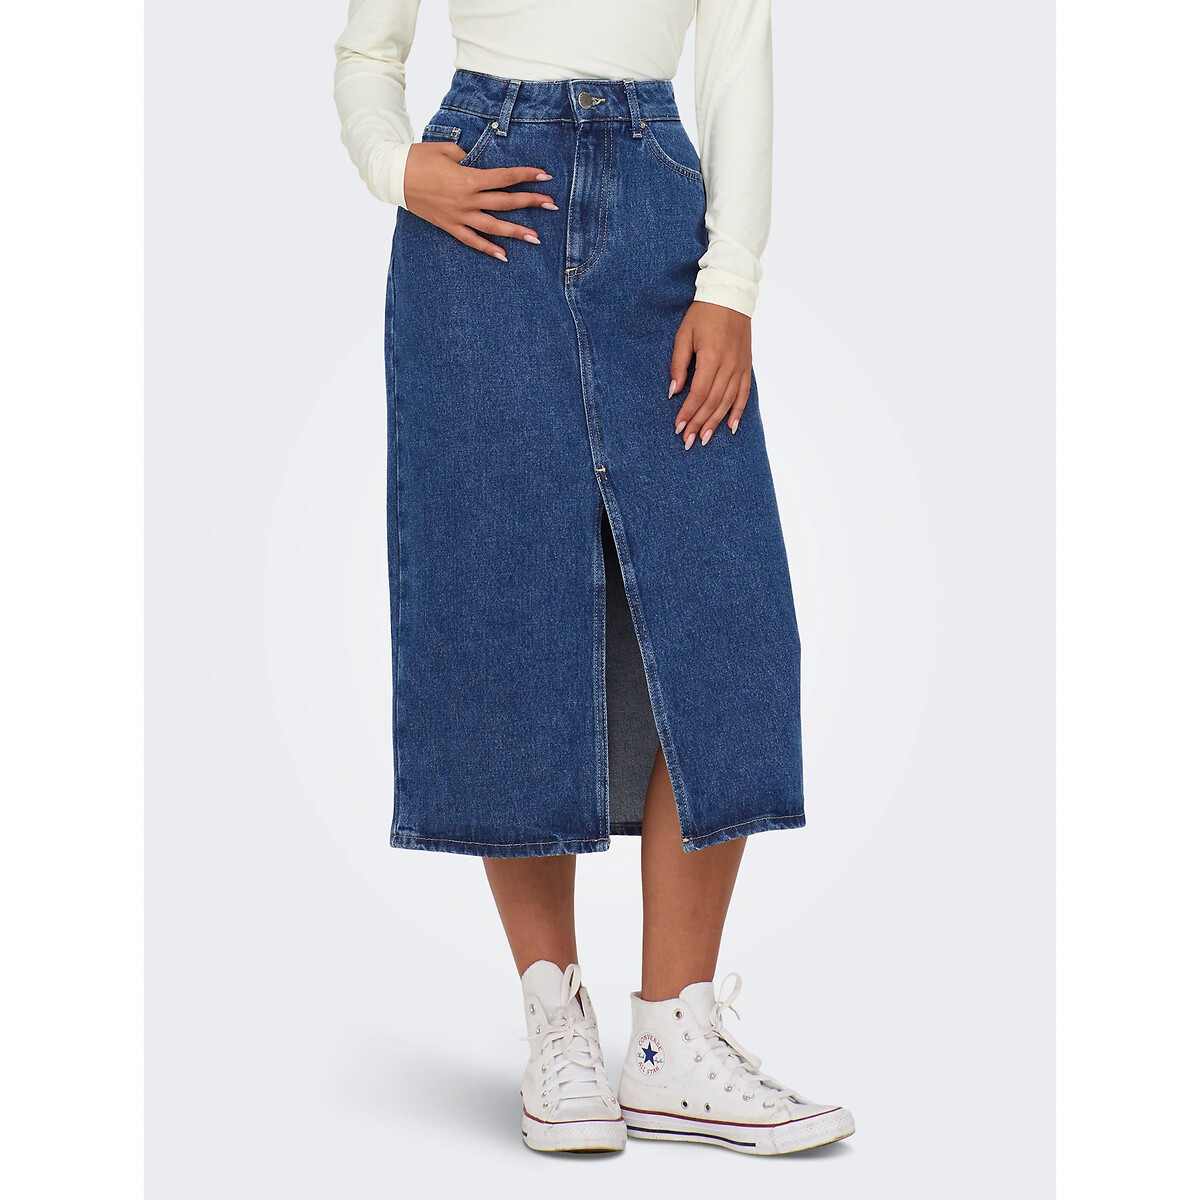 Юбка-миди из джинсовой ткани XL синий юбка длинная из джинсовой ткани xs синий